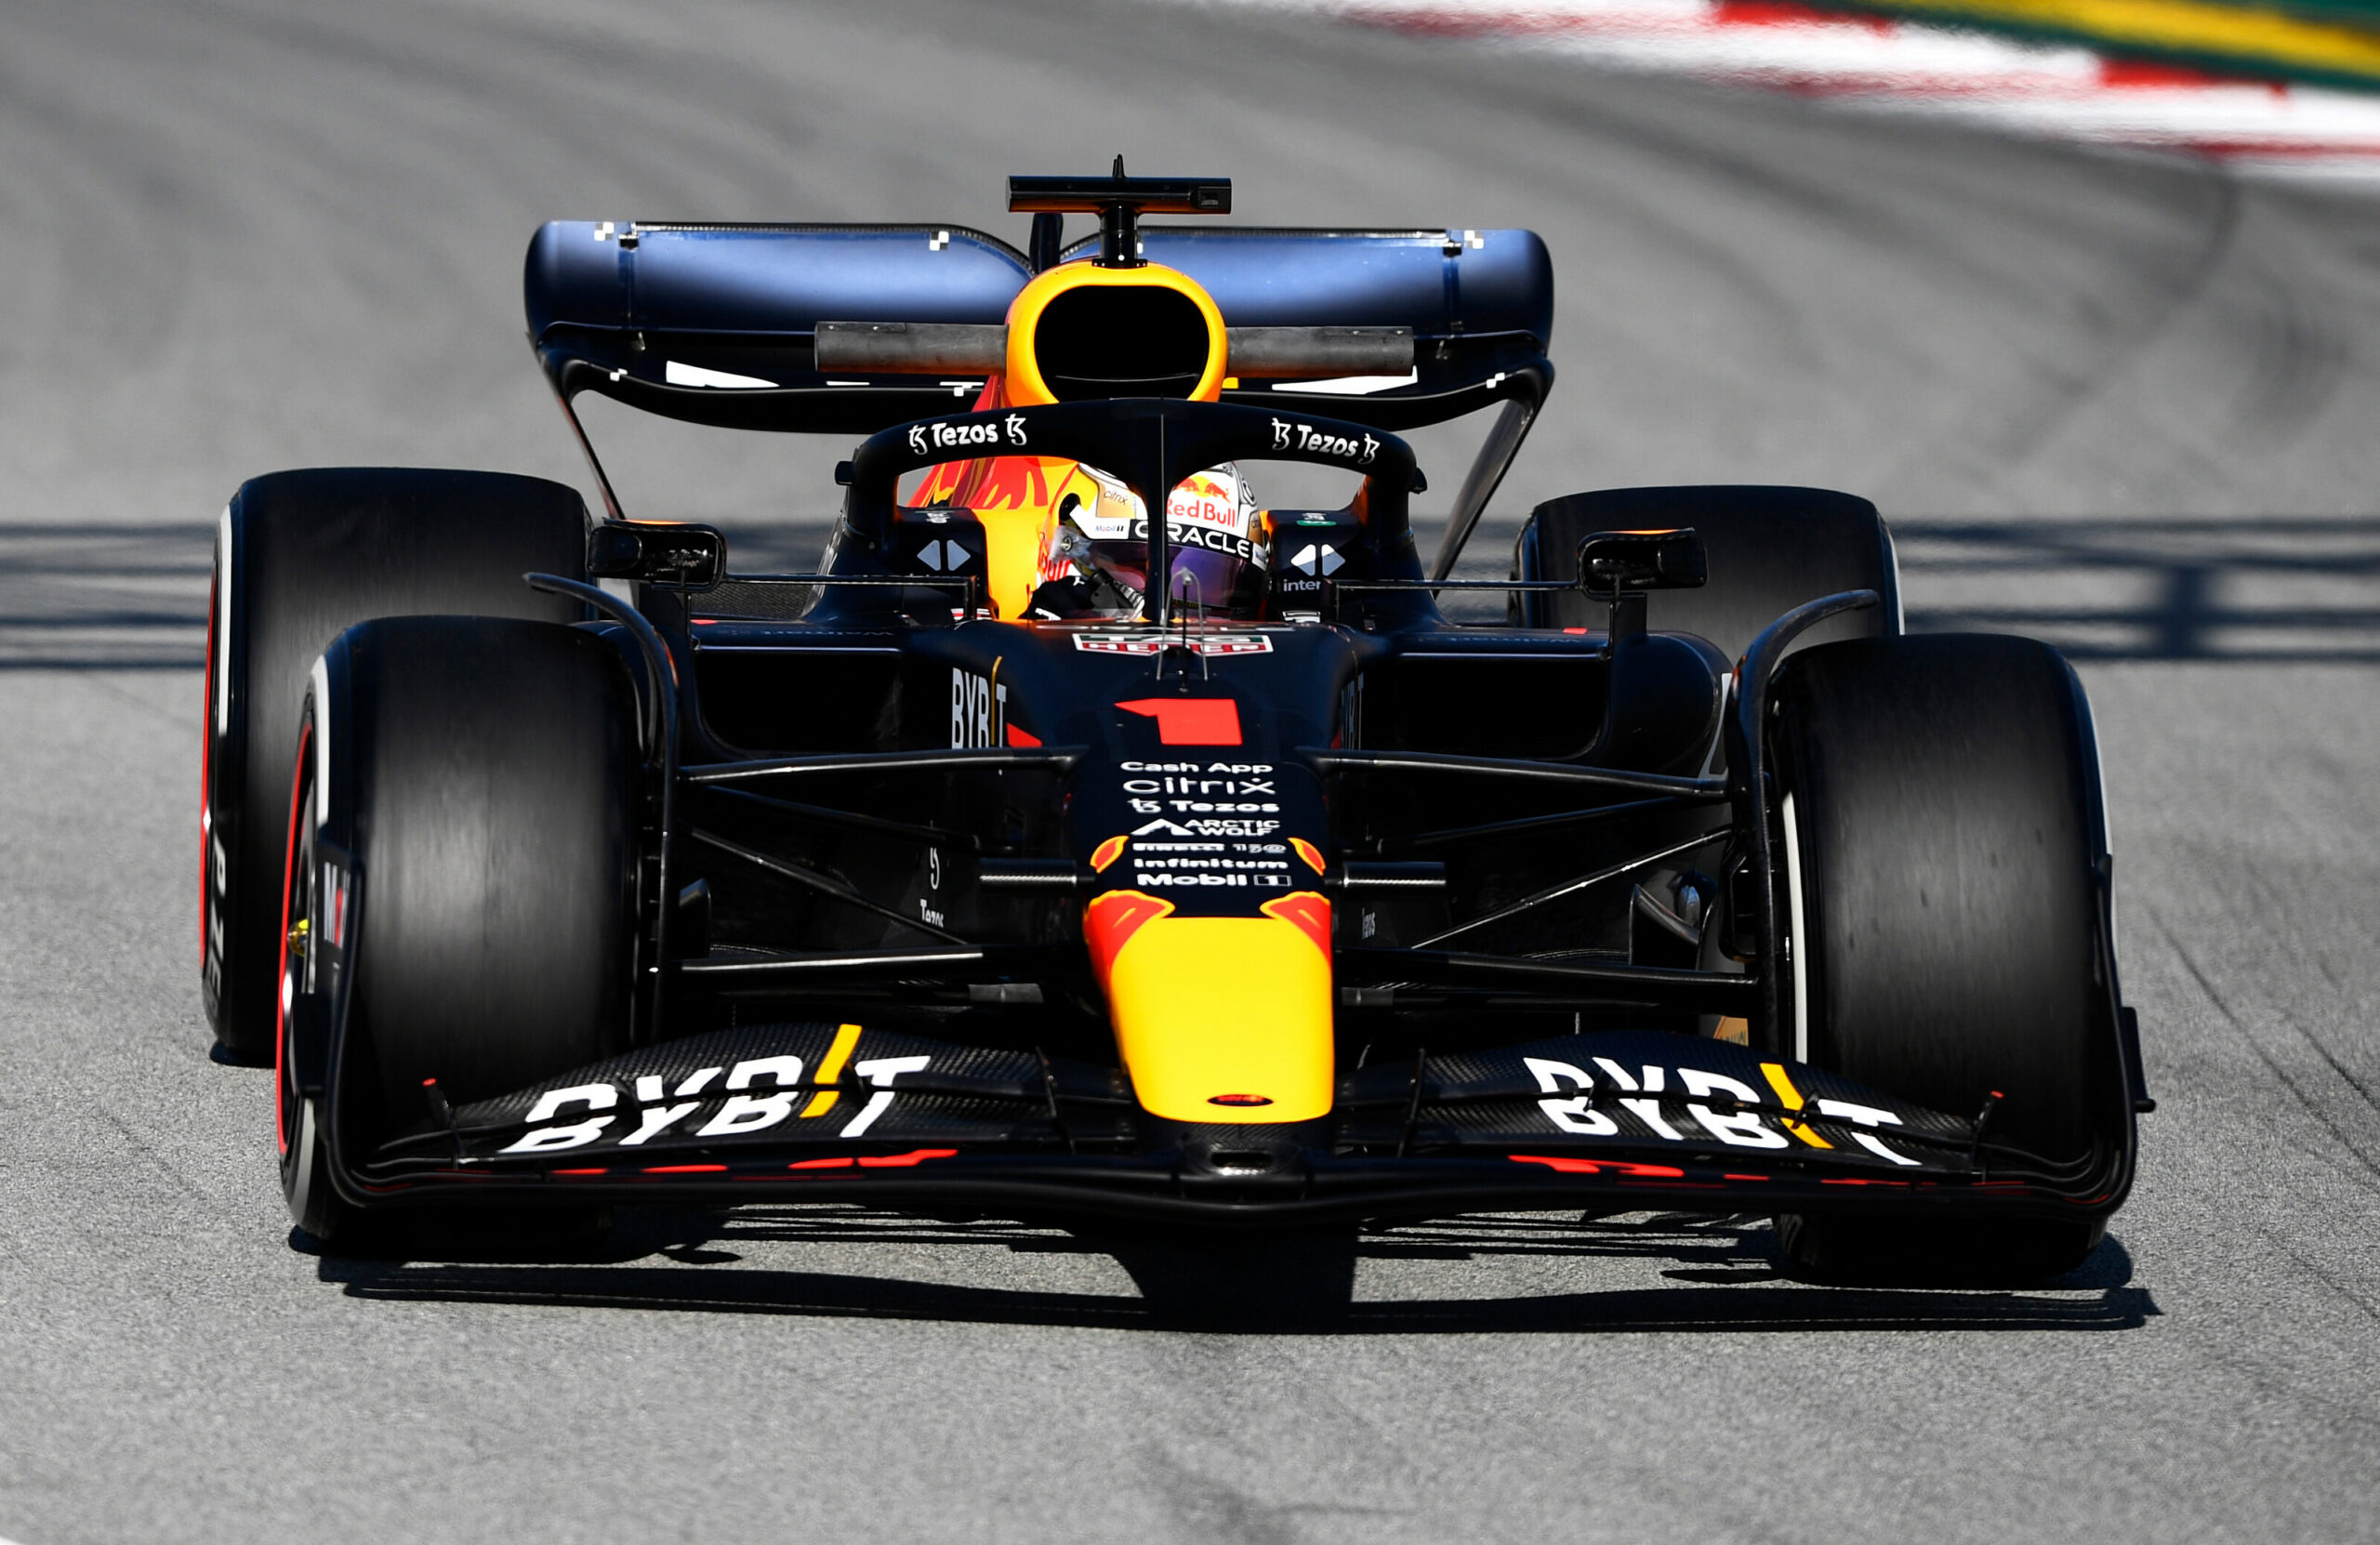 F1 - Le numéro 1 sur la Red Bull est un vrai boost pour toute l'équipe selon Horner